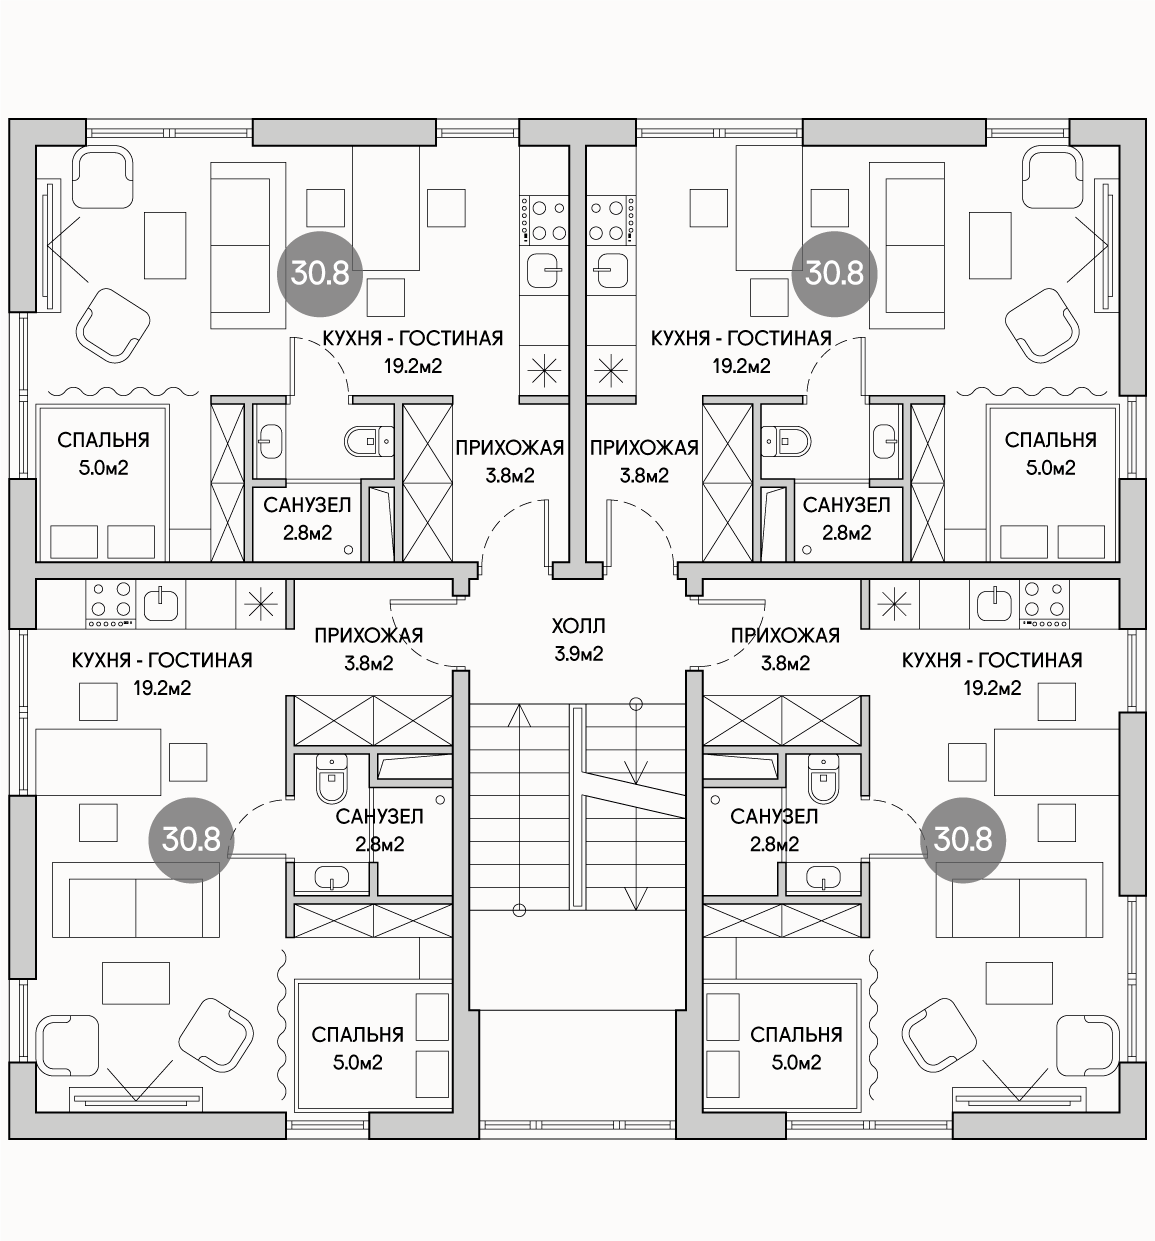 Планирока 3-го этажа в проекте Многоквартирный дом с эксплуатируемой кровлей MK-515